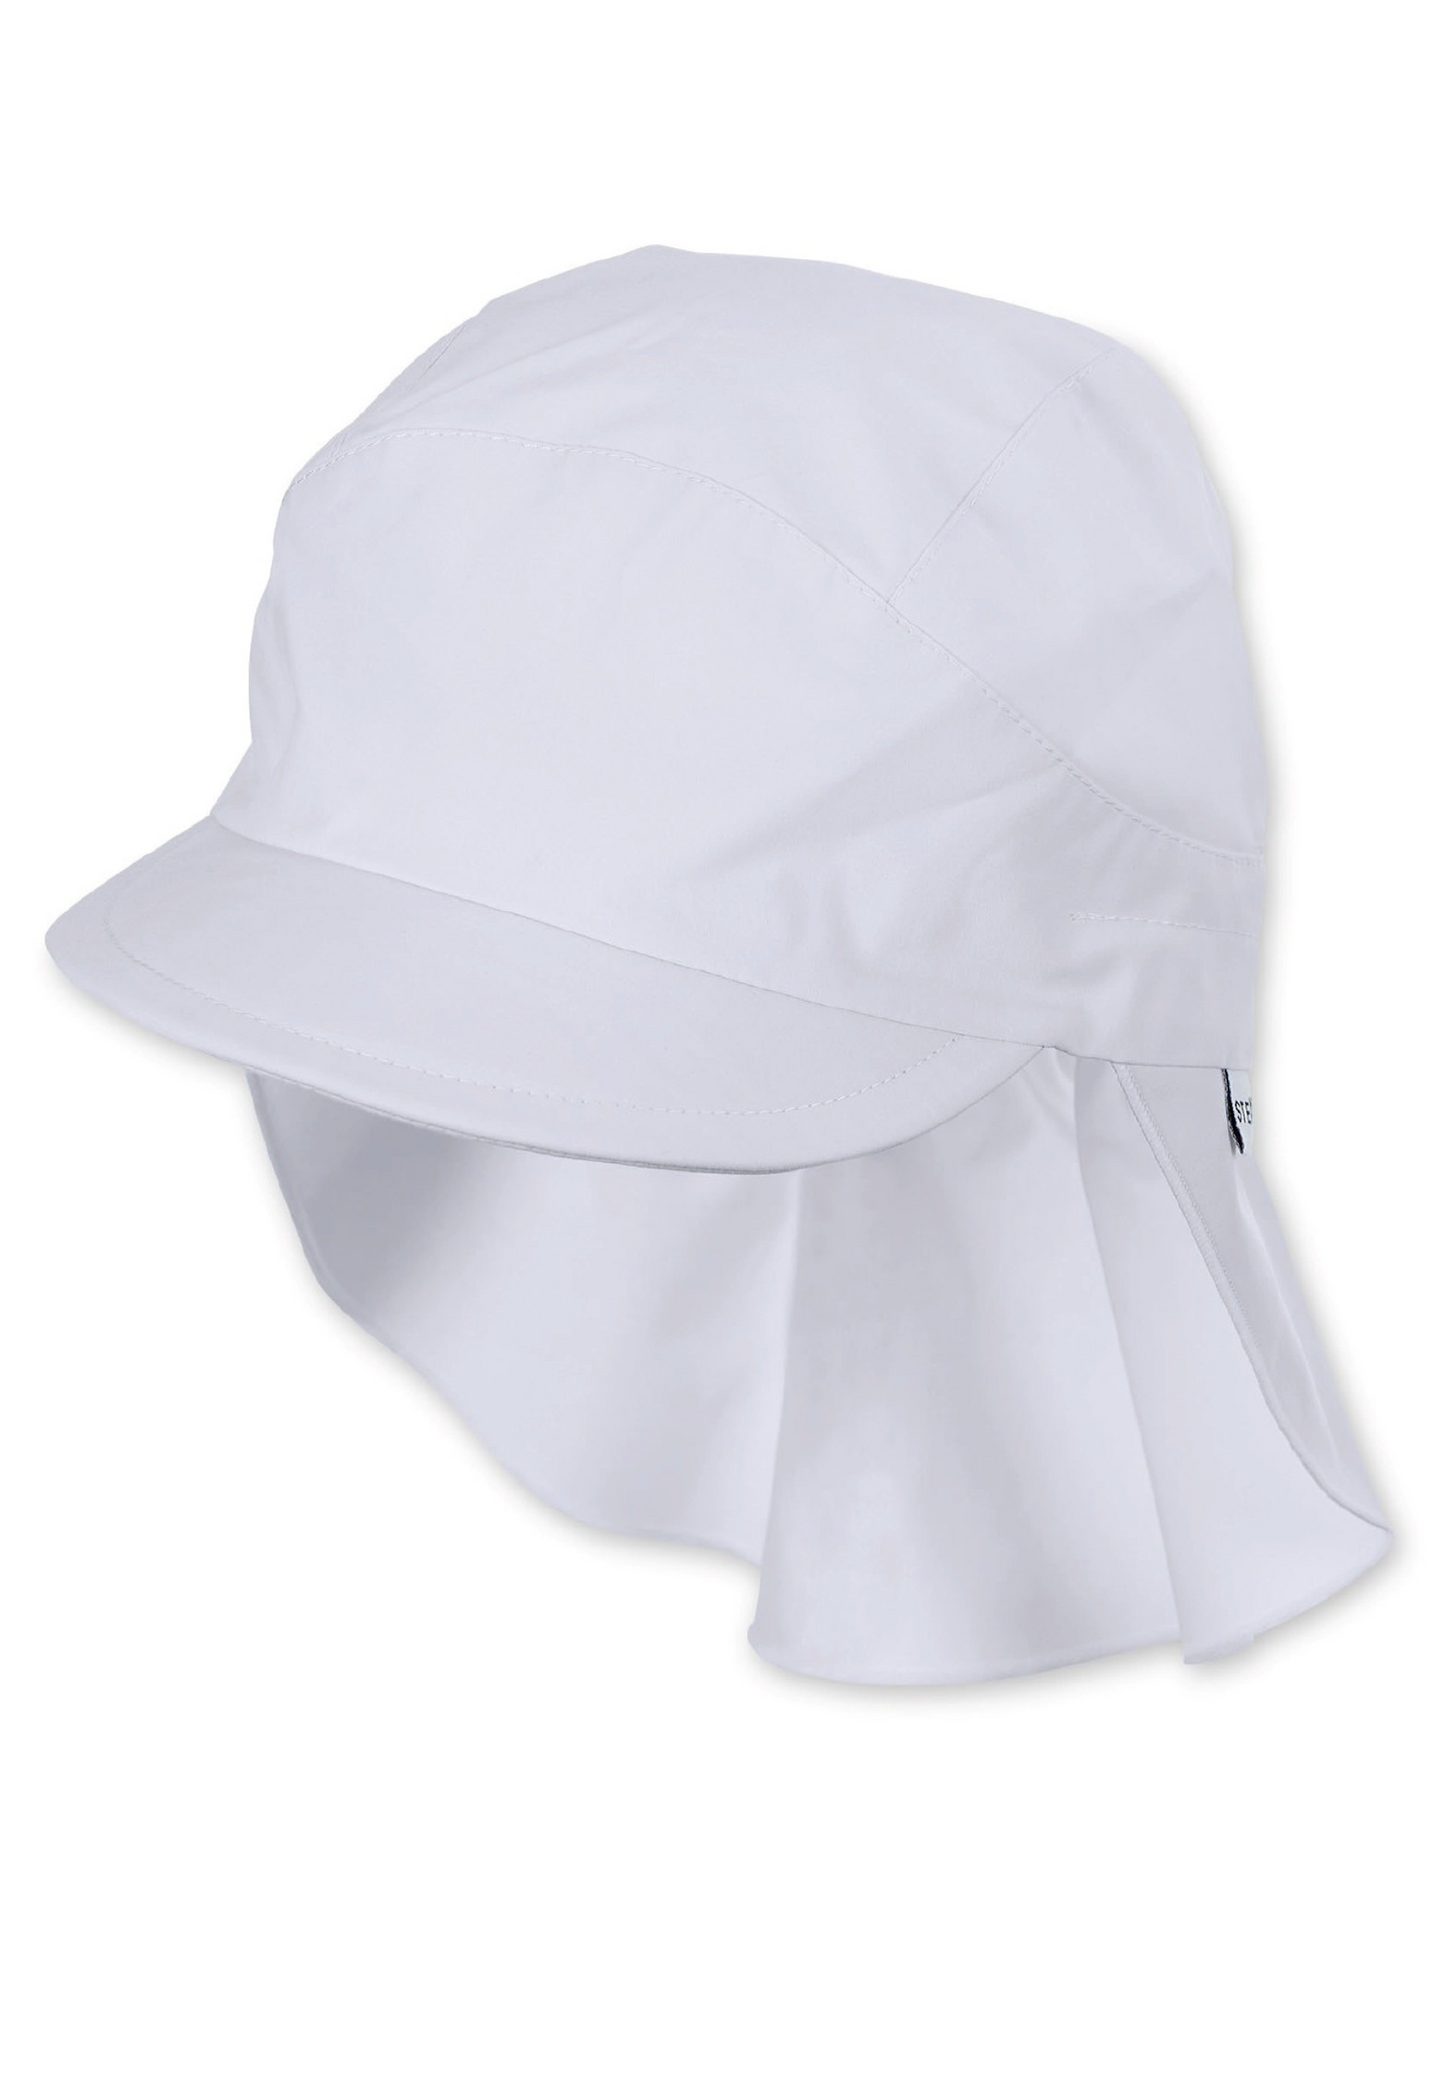 Kuklakaitsega suvemüts, UV kaitse 50+